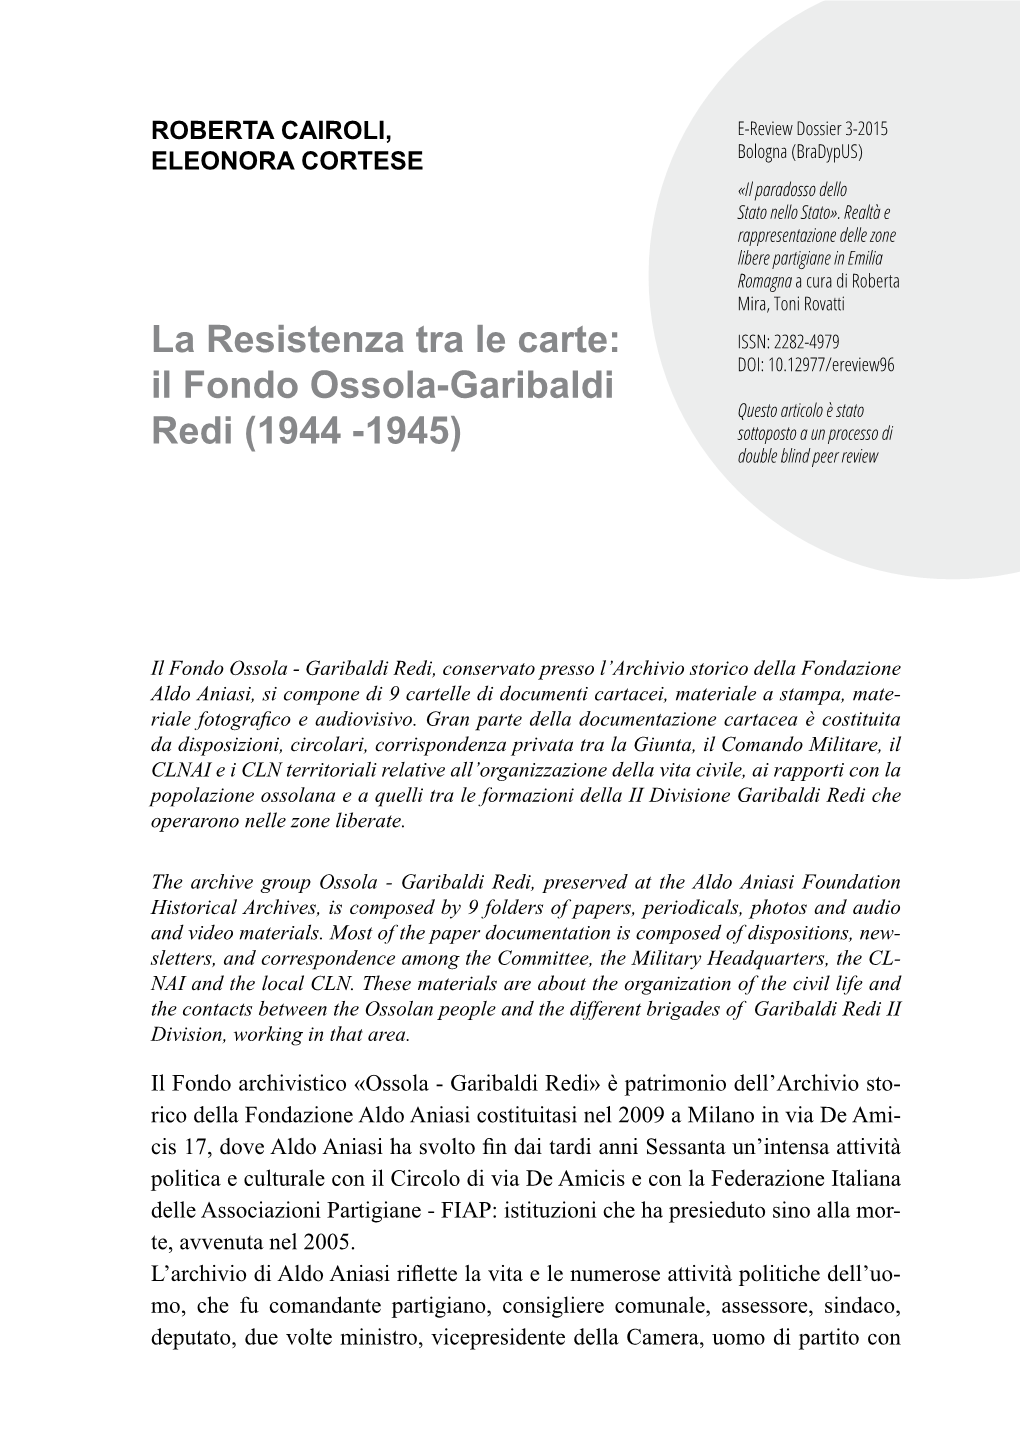 La Resistenza Tra Le Carte: Il Fondo Ossola-Garibaldi Redi (1944 -1945)